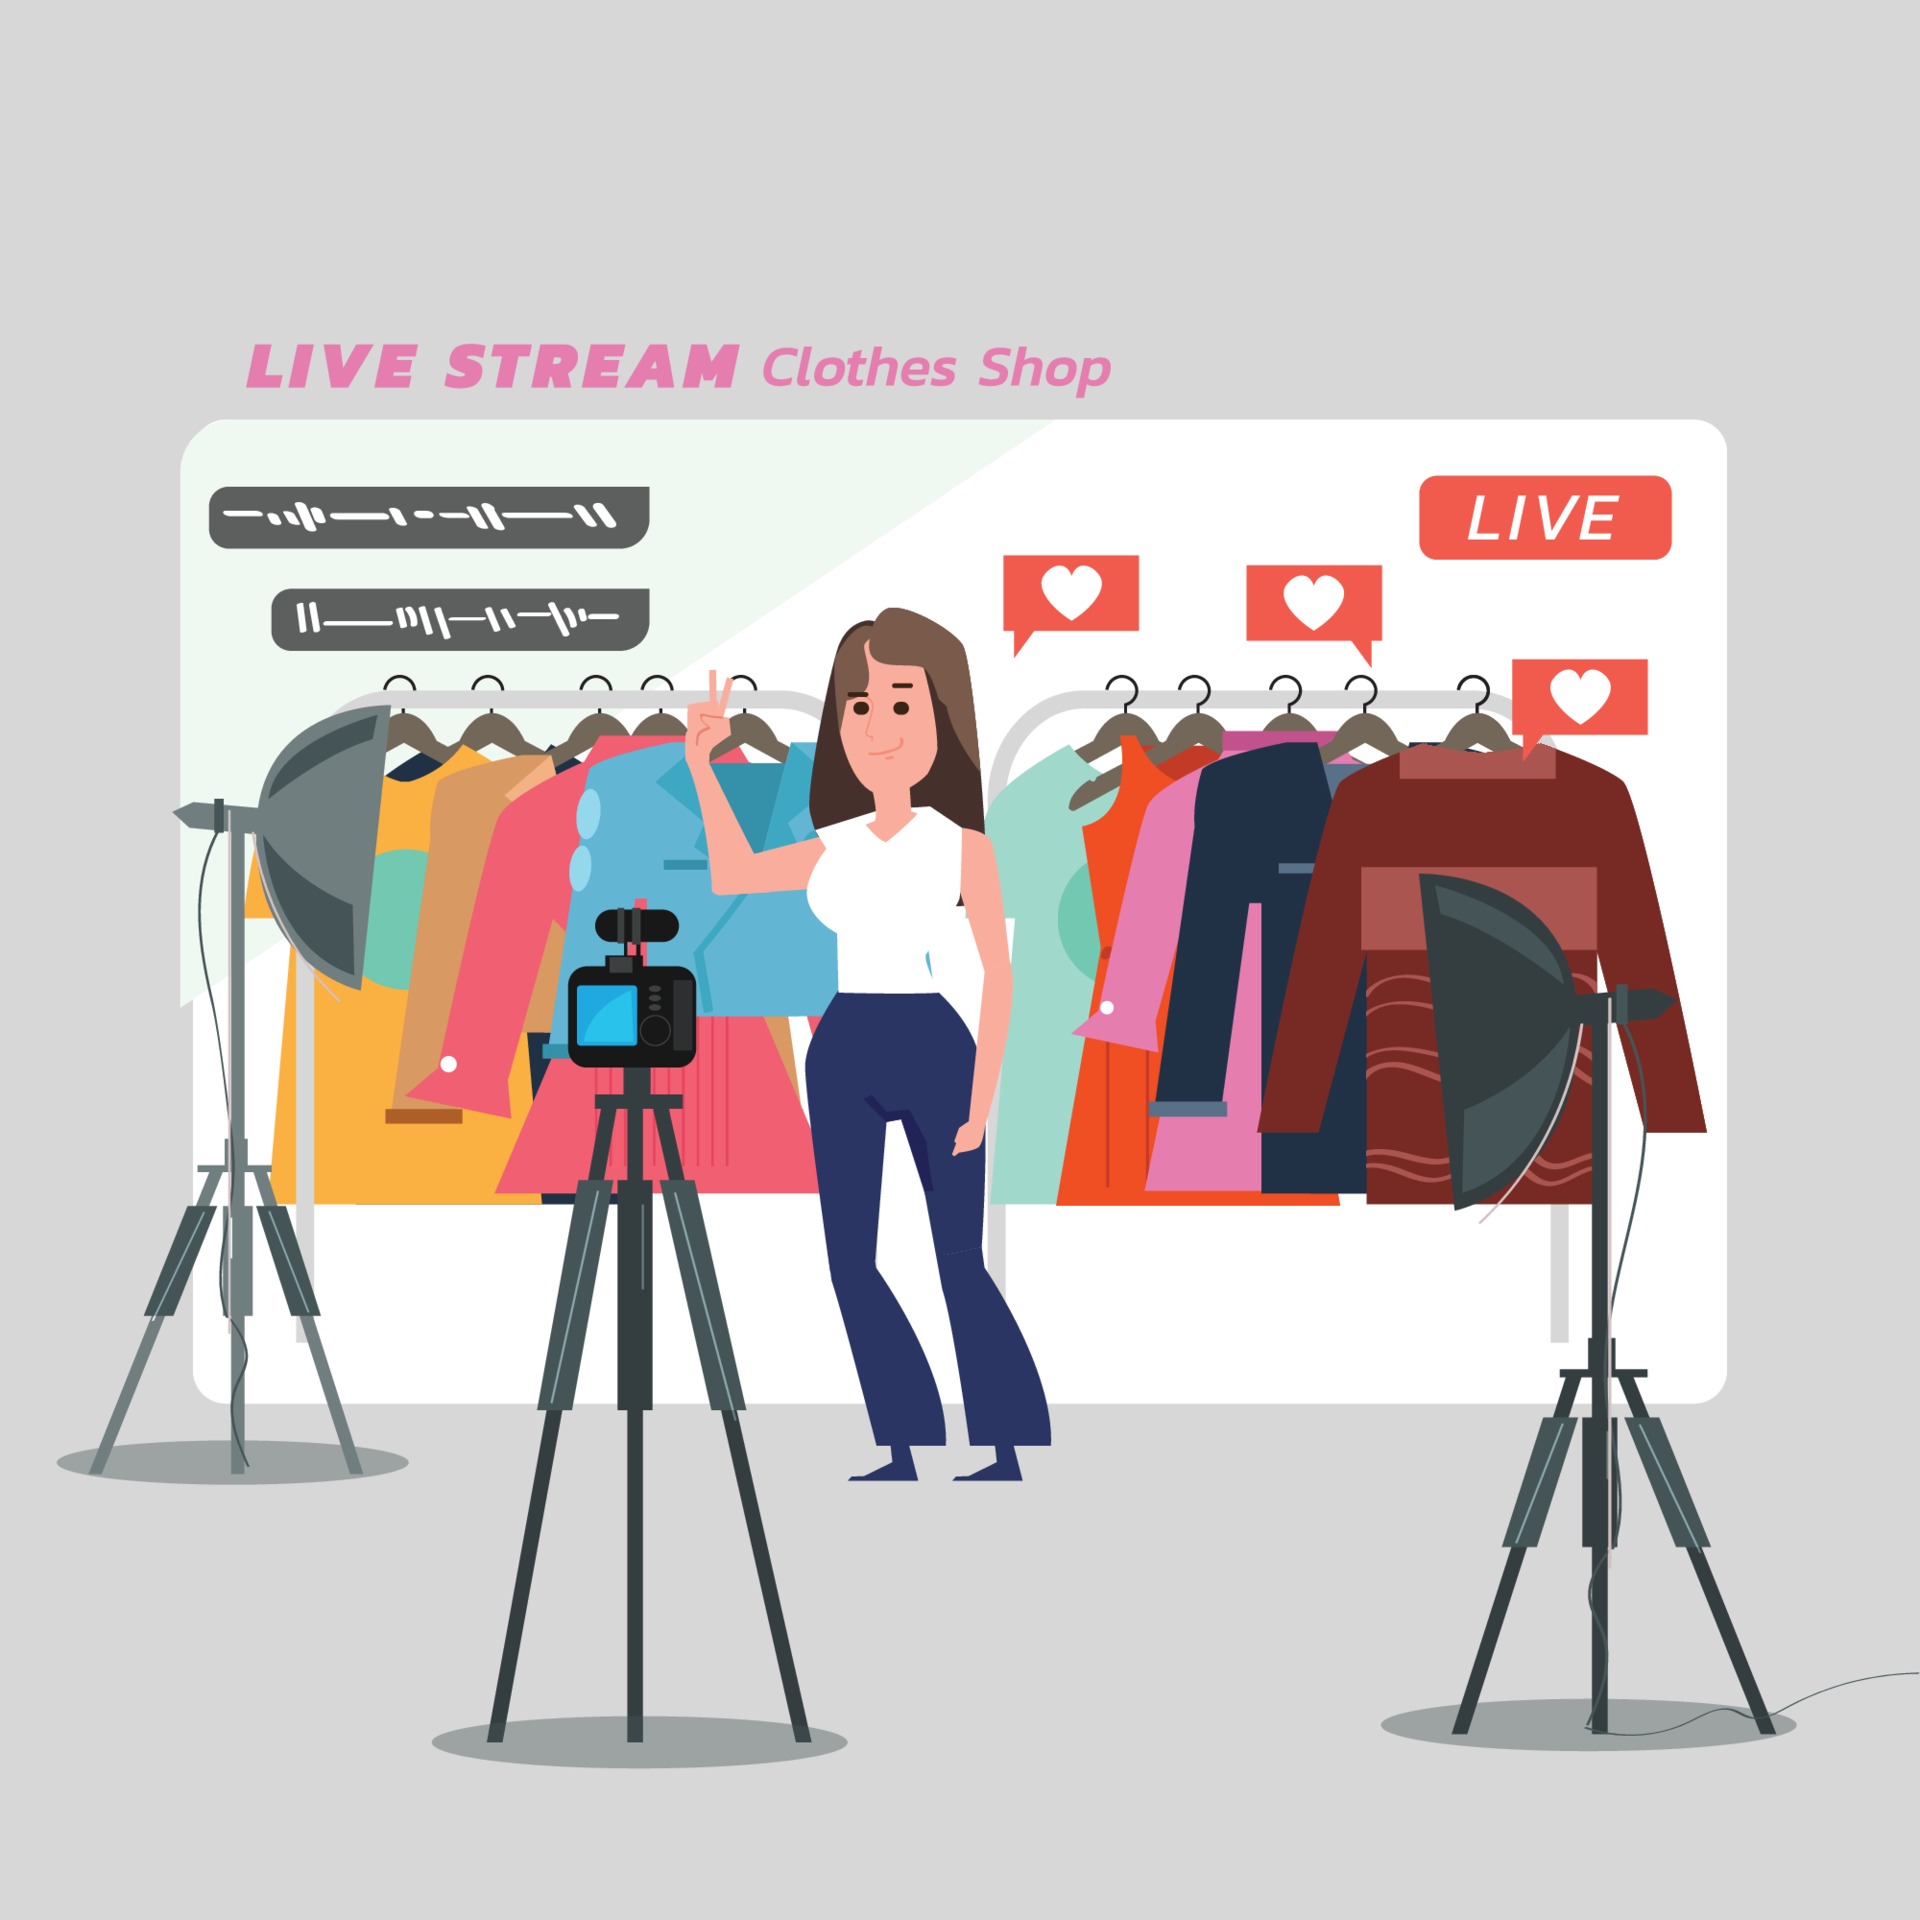 Afscheid in het midden van niets zien vrouwen die kleding online verkopen. thuis live video uitzenden. 2192415  Vectorkunst bij Vecteezy